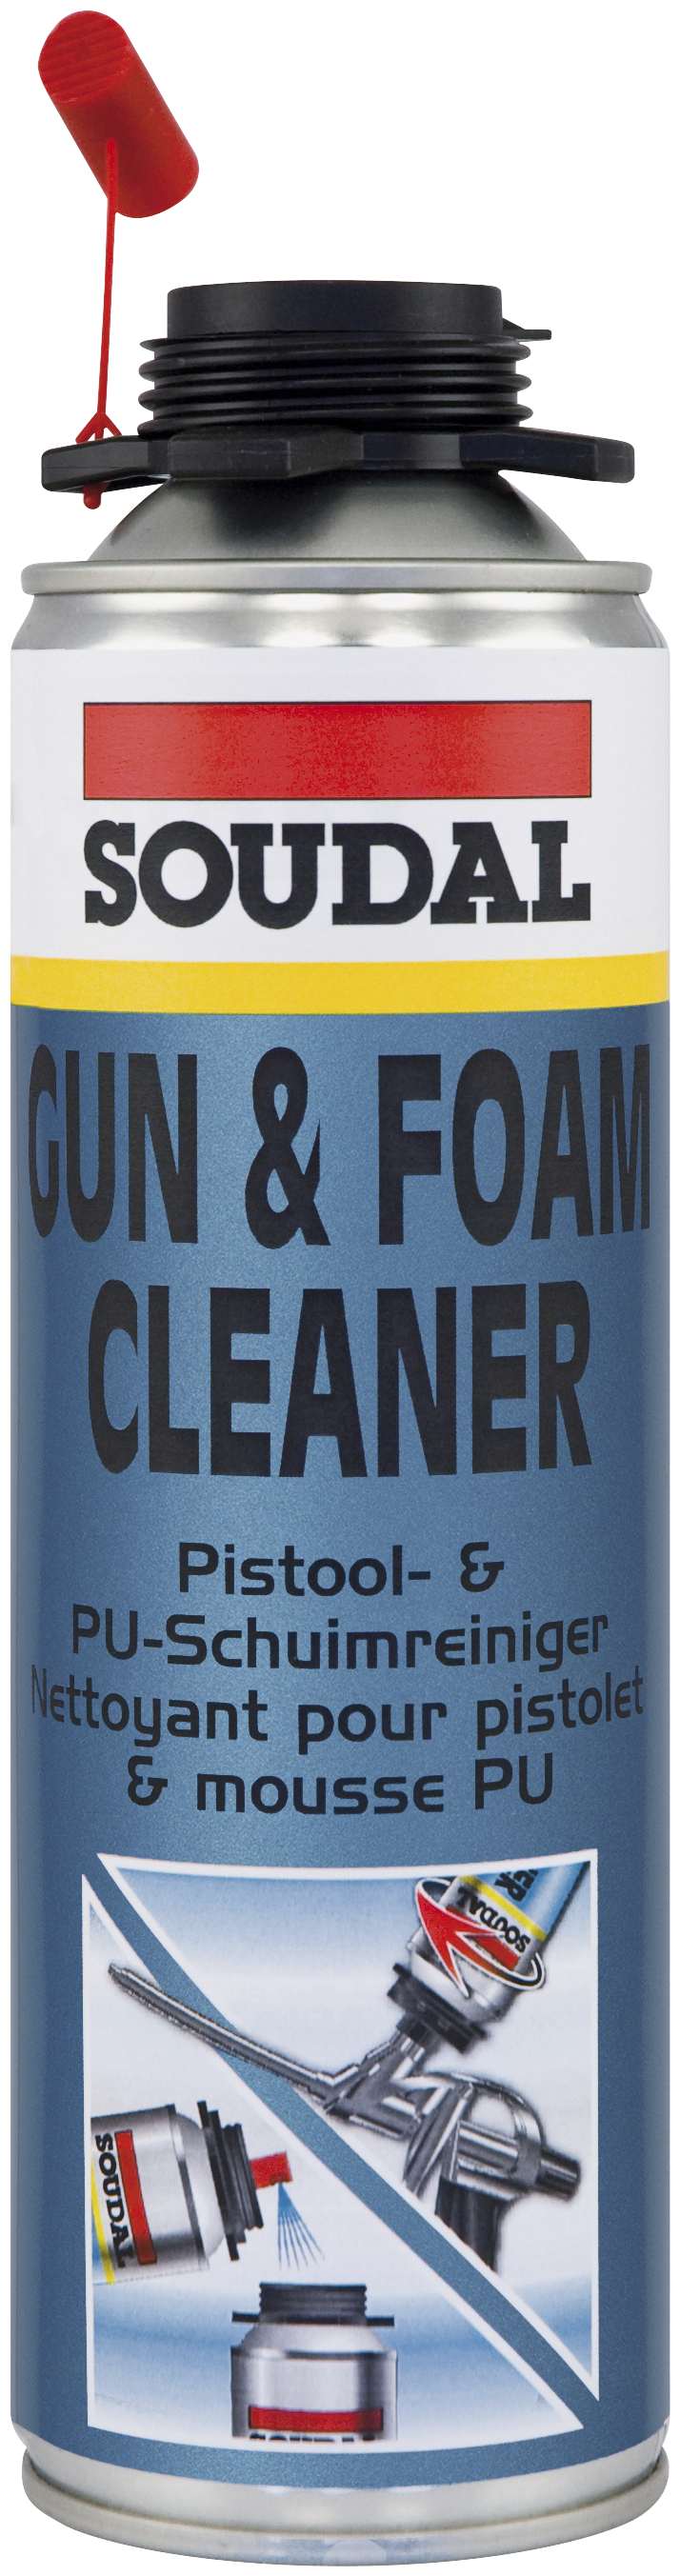 Bilde av Soudal Gun- & Foam Cleaner 500ml